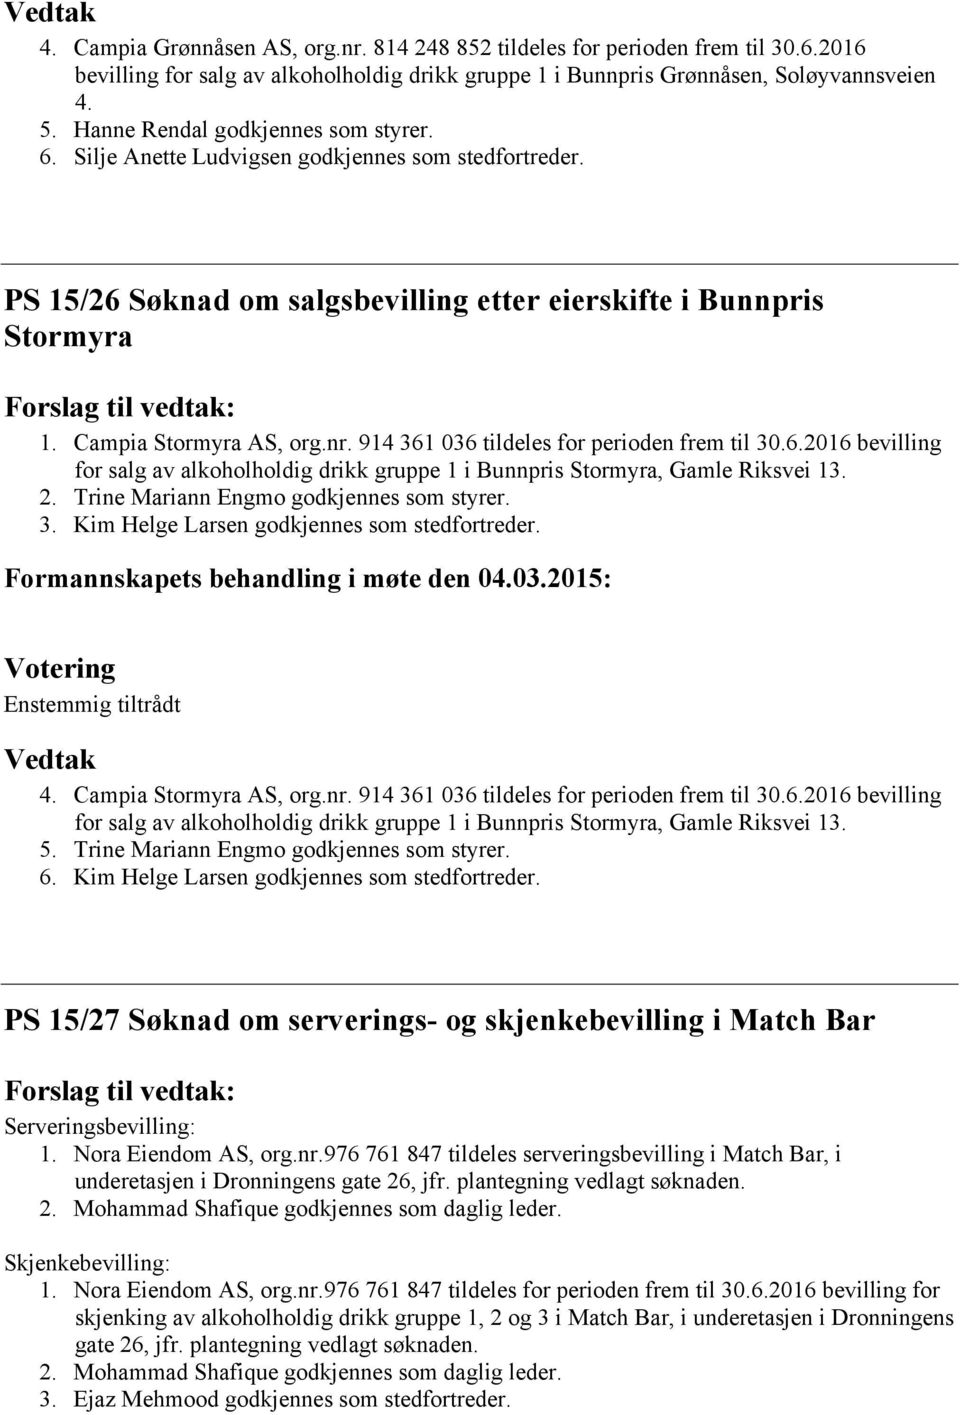 Campia Stormyra AS, org.nr. 914 361 036 tildeles for perioden frem til 30.6.2016 bevilling for salg av alkoholholdig drikk gruppe 1 i Bunnpris Stormyra, Gamle Riksvei 13. 2.